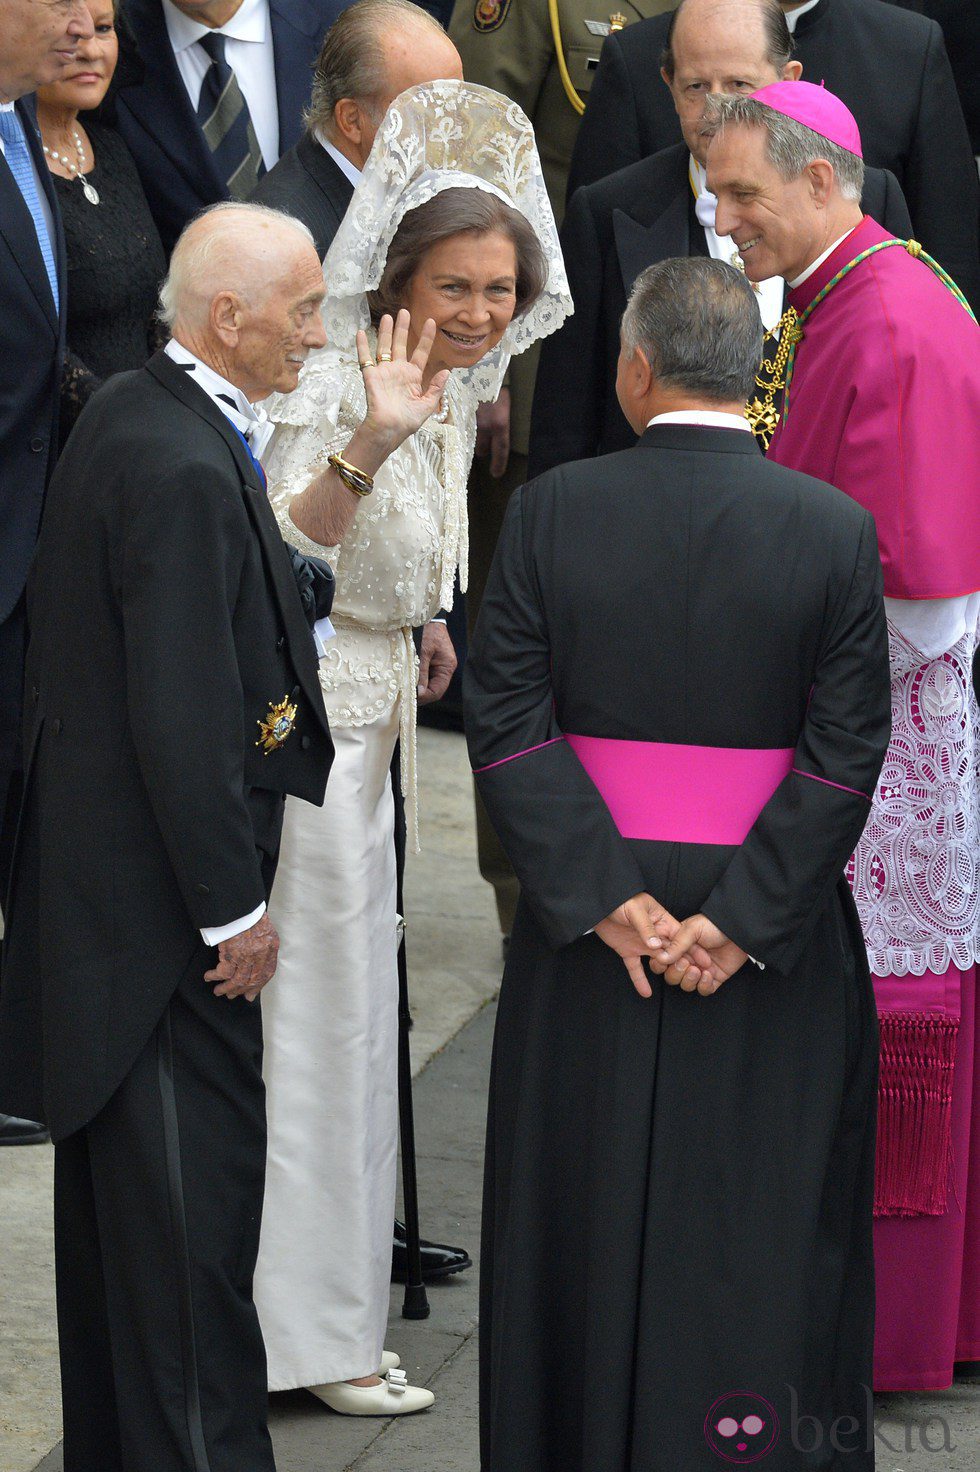 La Reina Sofía saludando de mantilla en el Vaticano